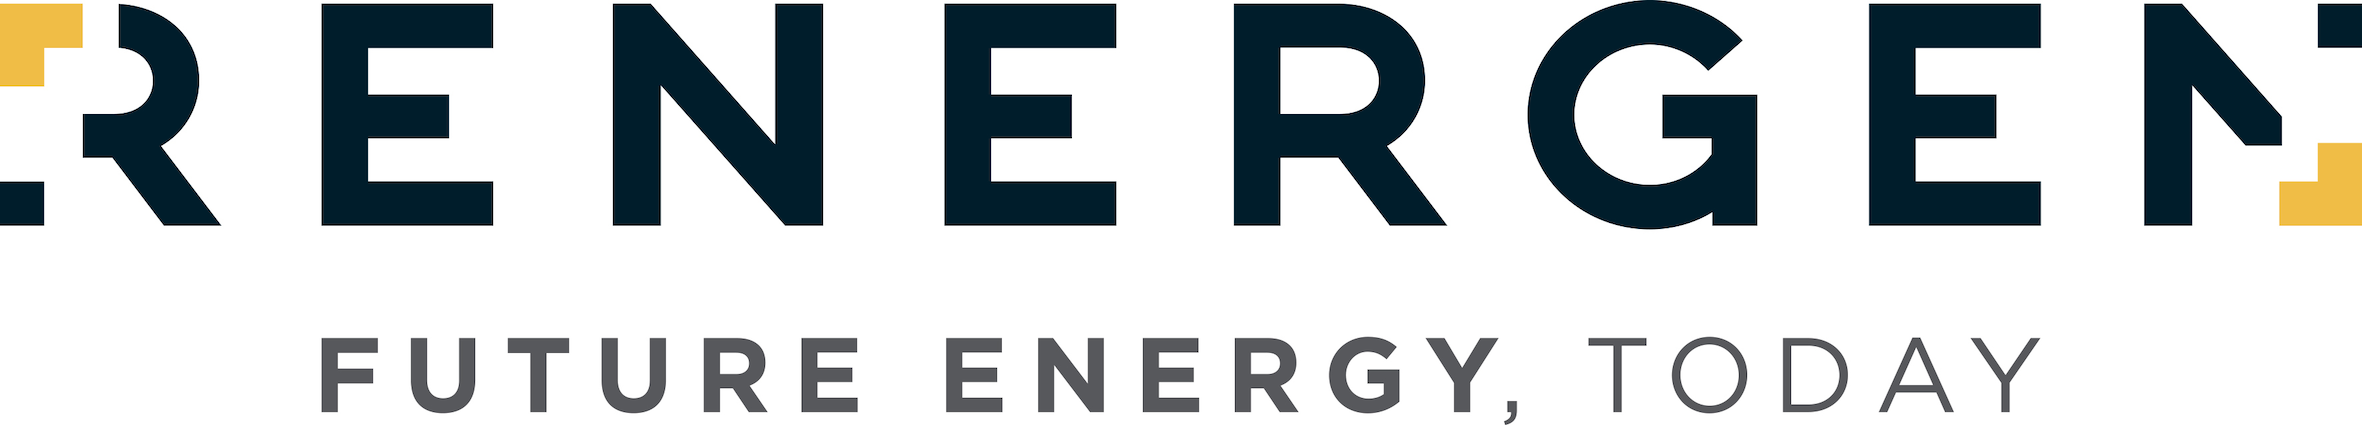 Renergen Limited Logo